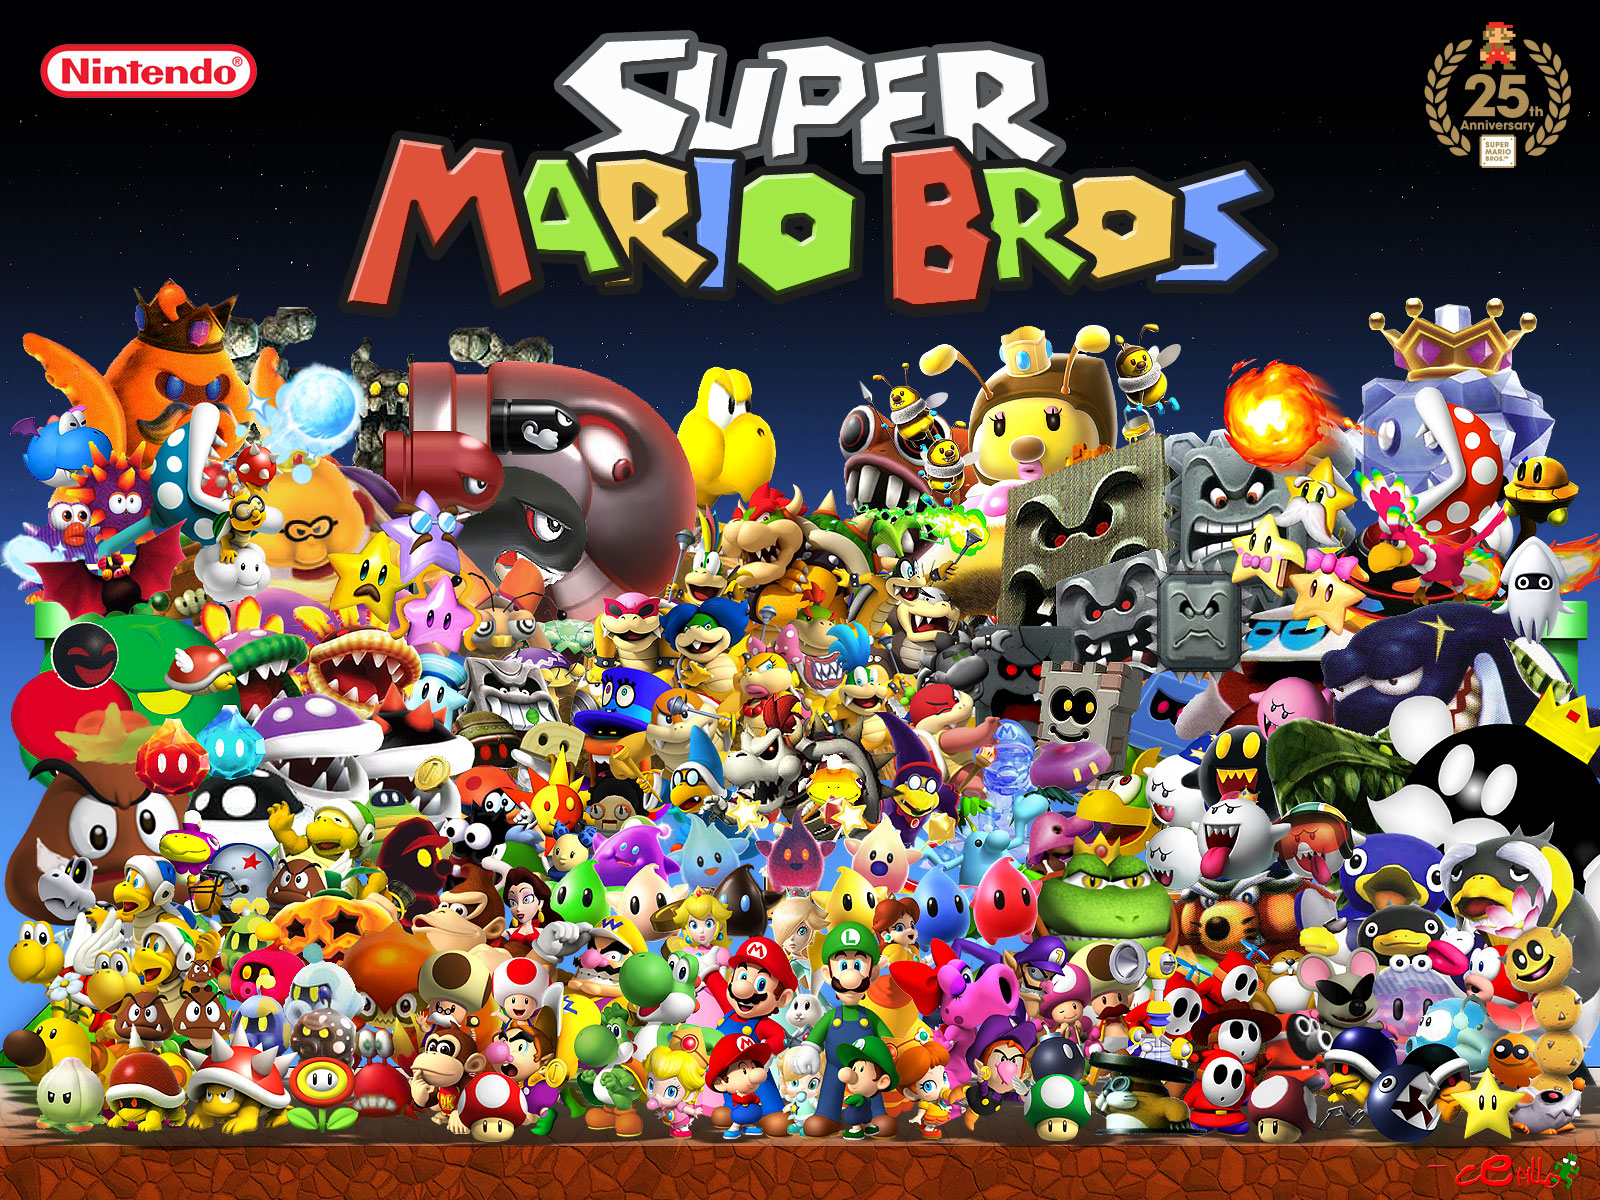 Super Mario Bros Characters - wallpaper.